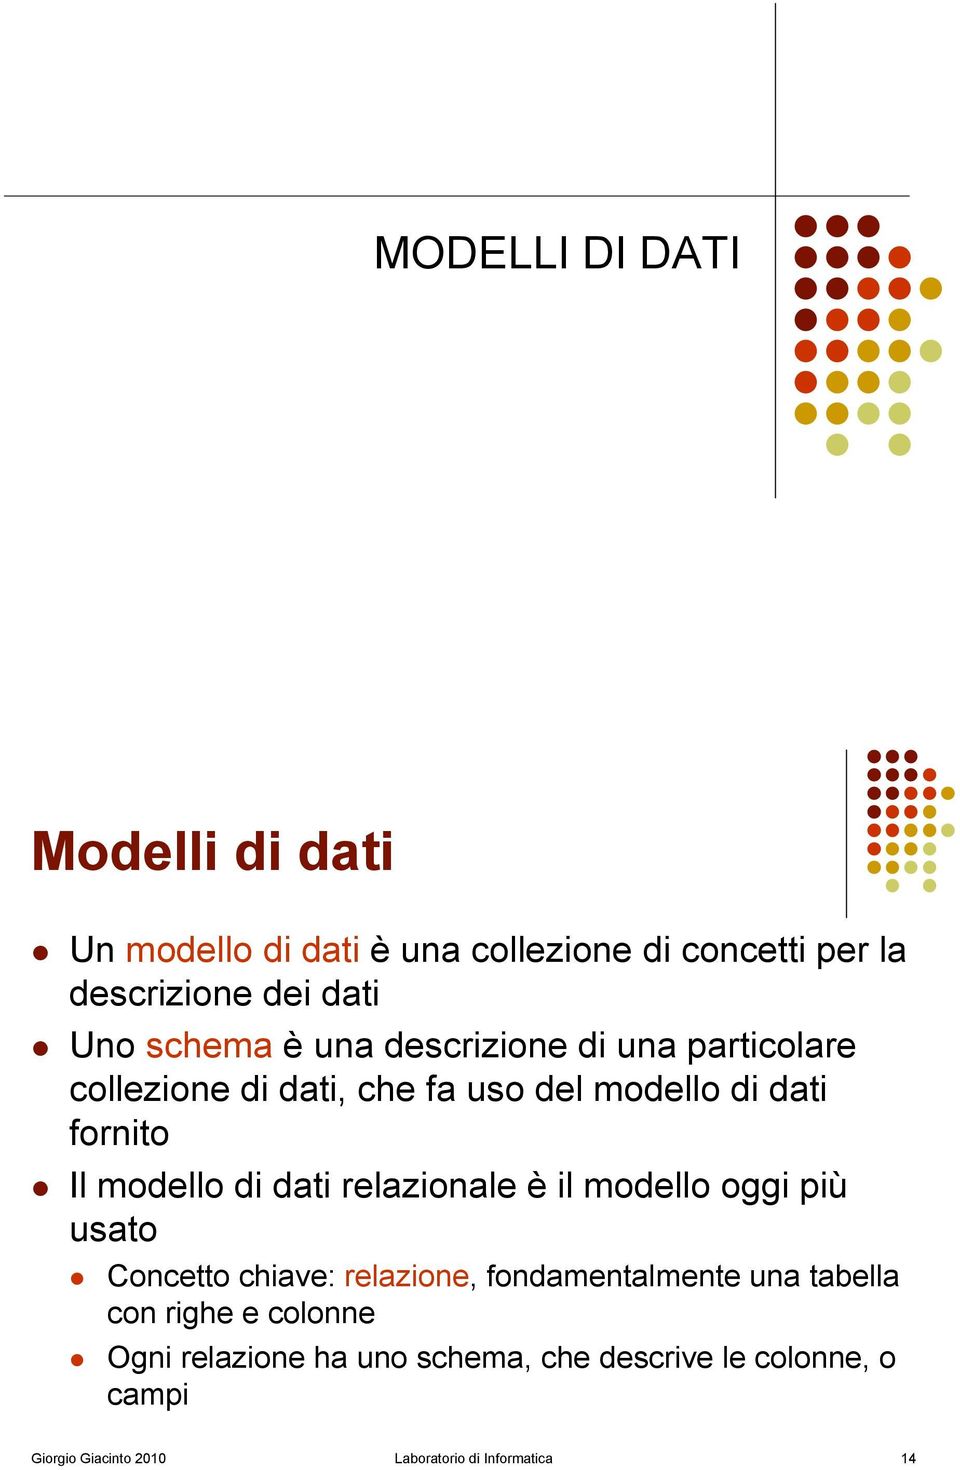 Il modello di dati relazionale è il modello oggi più usato!